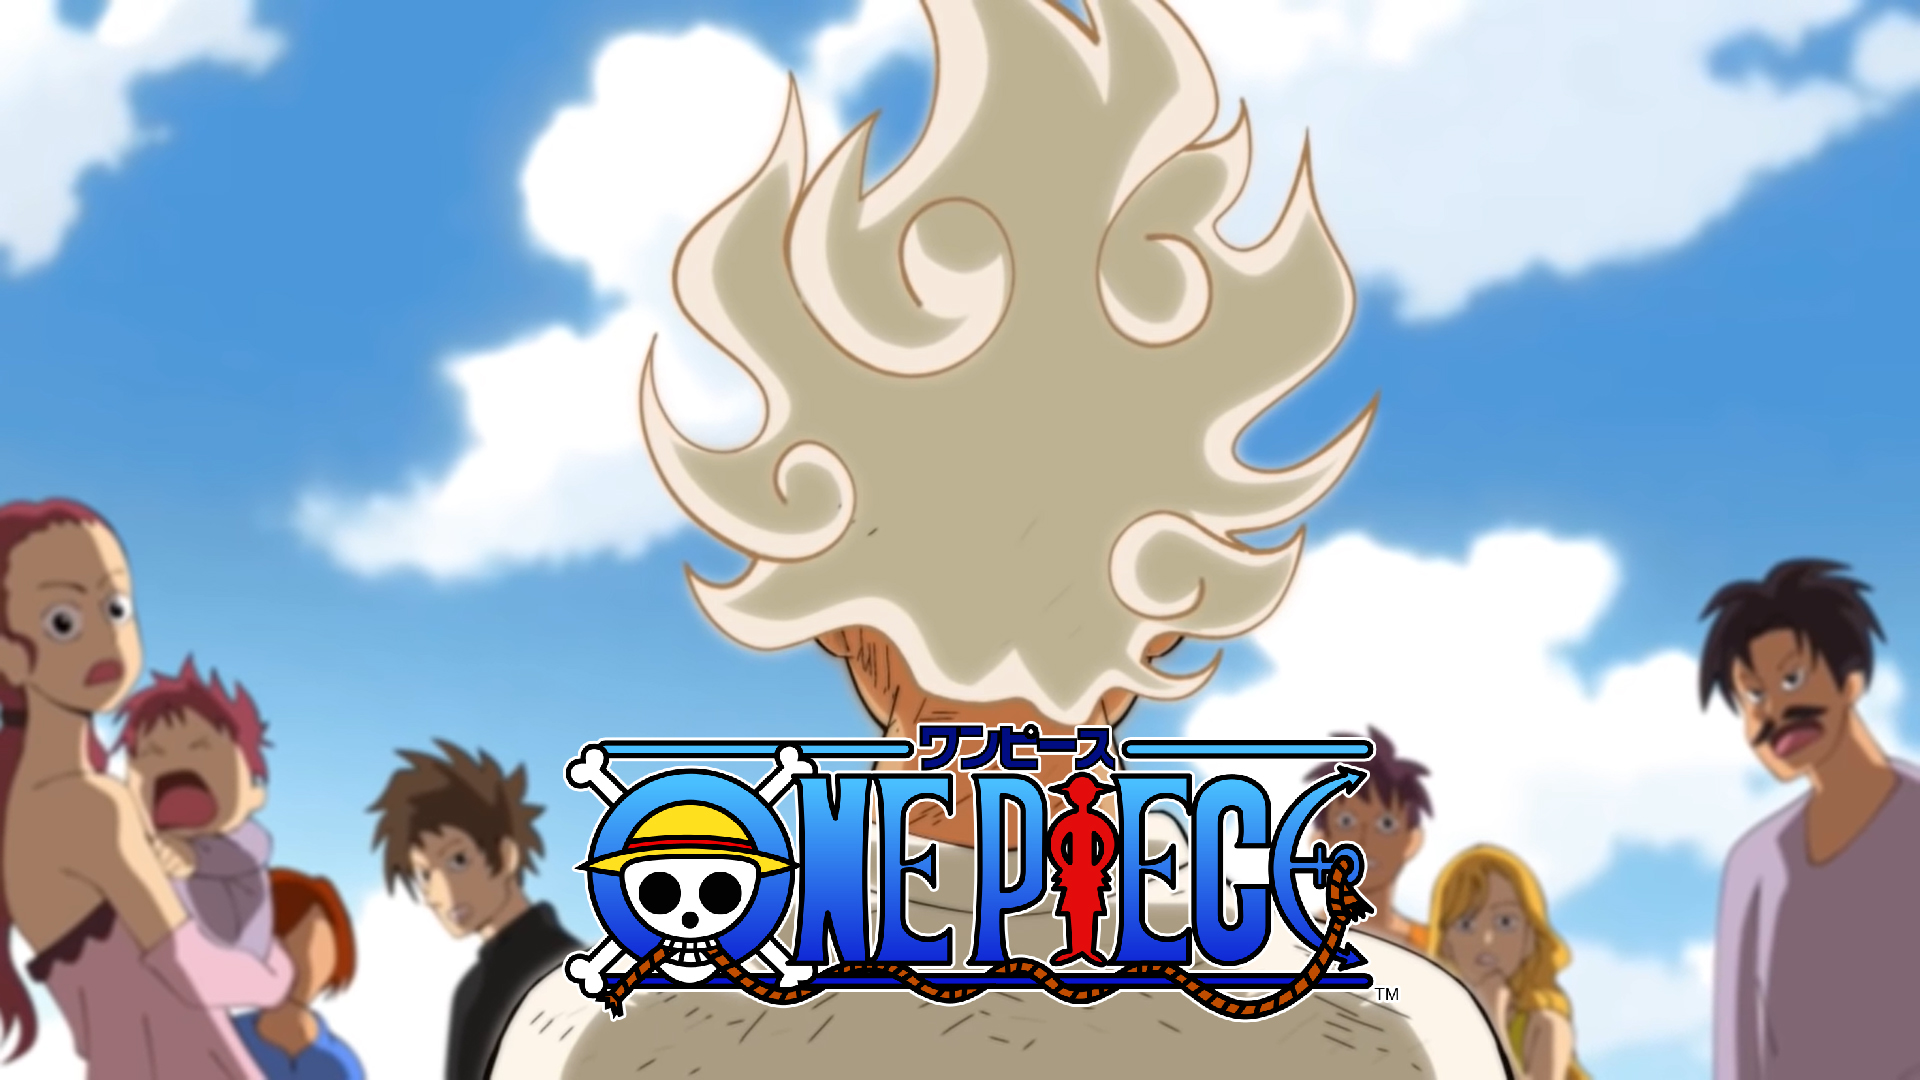 One Piece 1062 Résumé Complet : ils sont encore la ? 